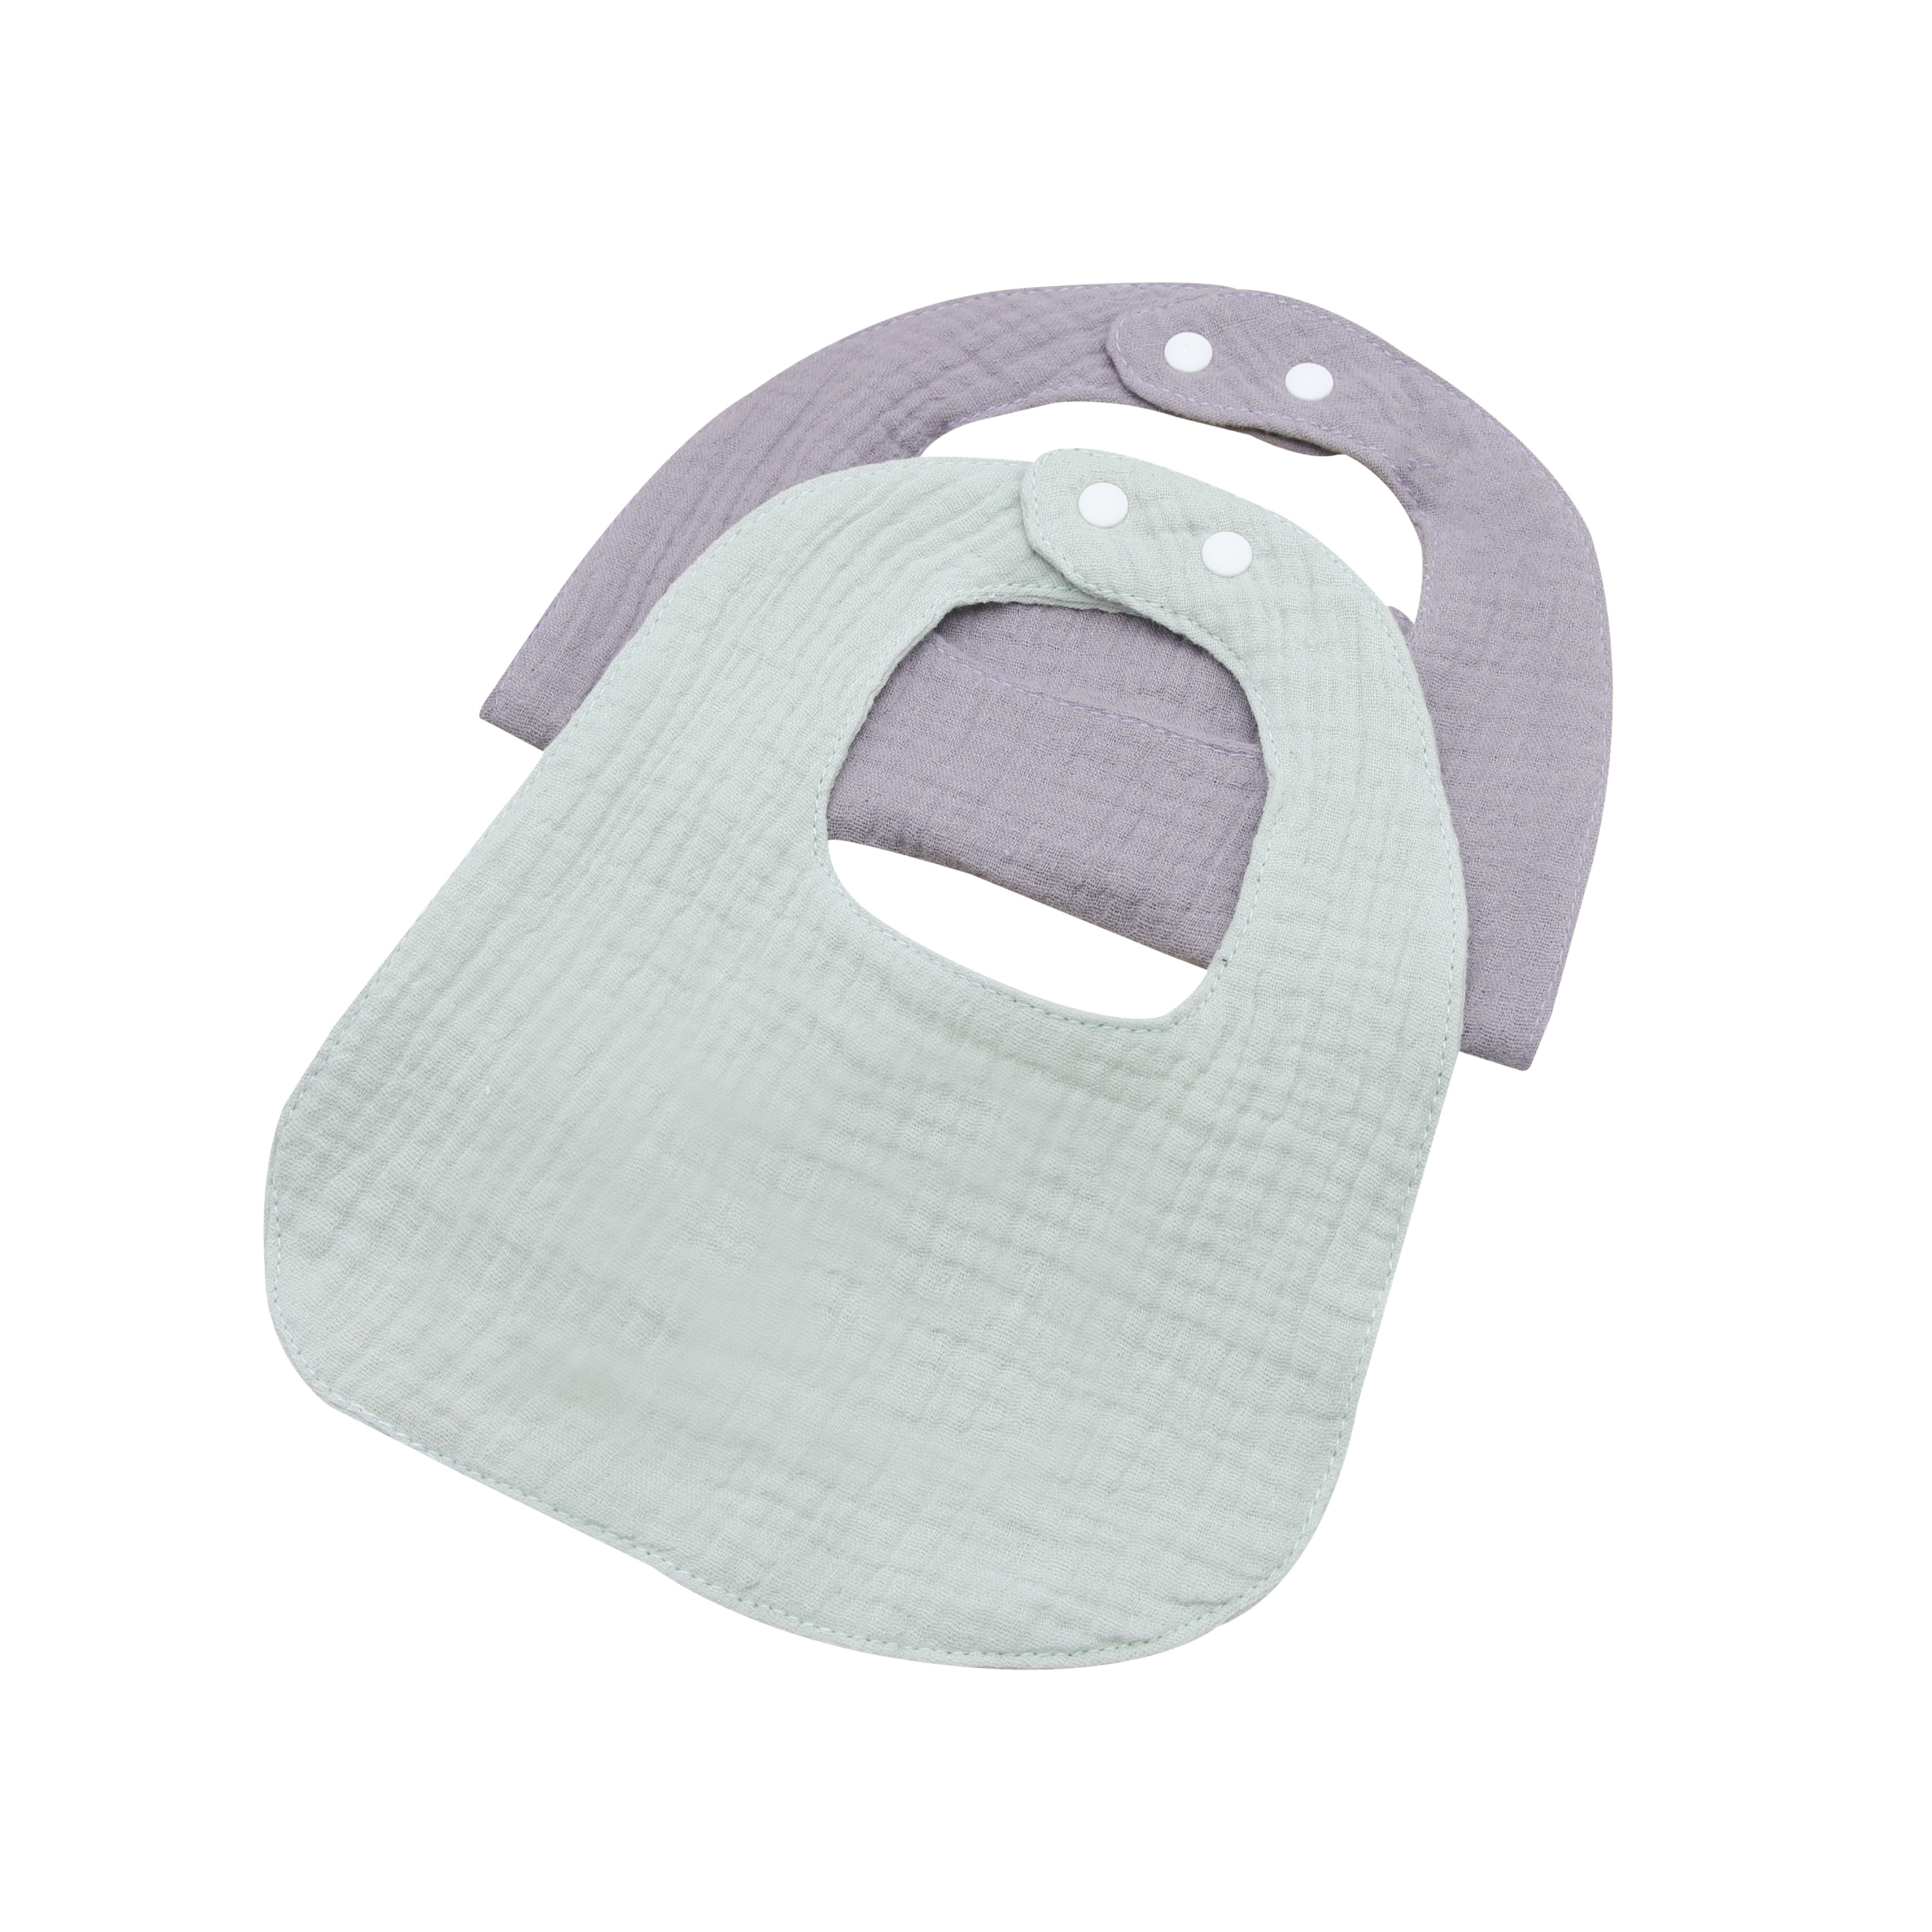 Set 2 Yếm giữ ấm cổ cho bé hình chữ U 100% cotton siêu mềm comfybaby có size cho bé 0-6 và 6-12 tháng